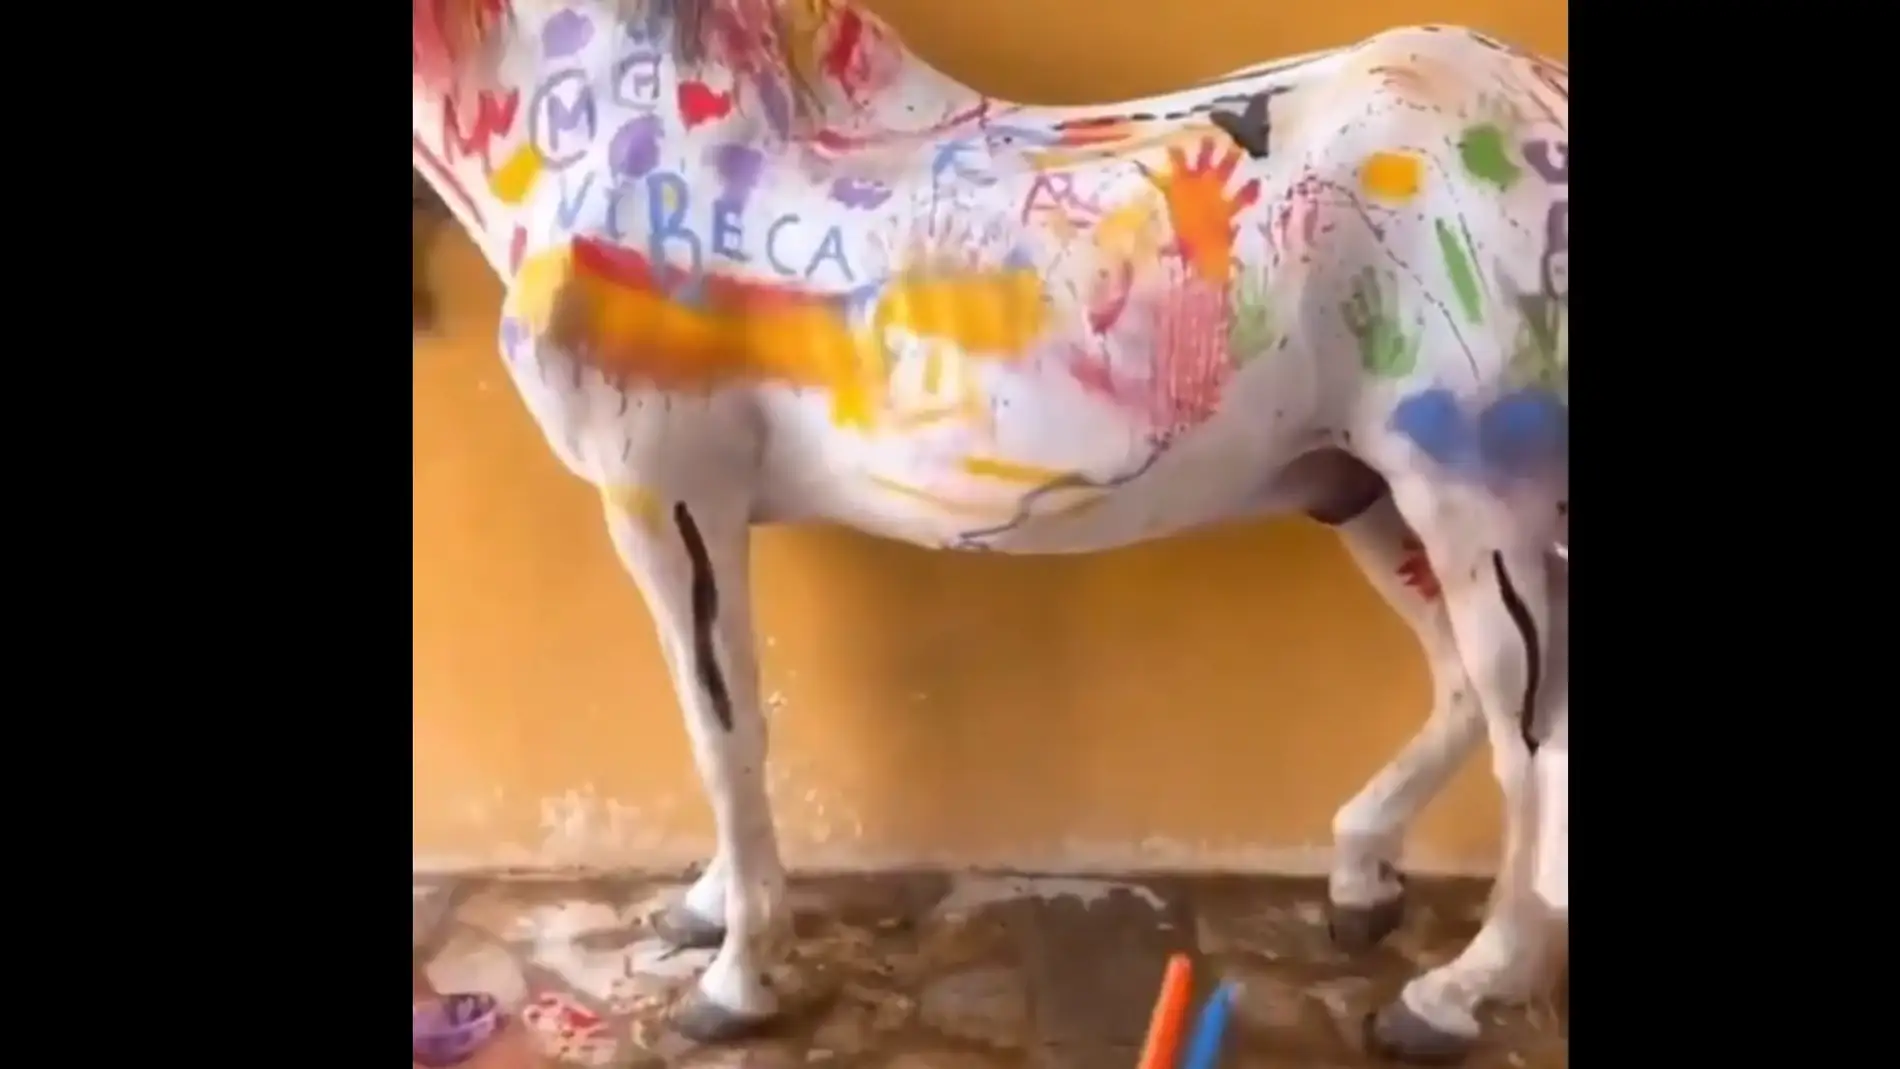 Indignación entre los animalistas por una 'actividad infantil' donde los niños pintan caballos reales